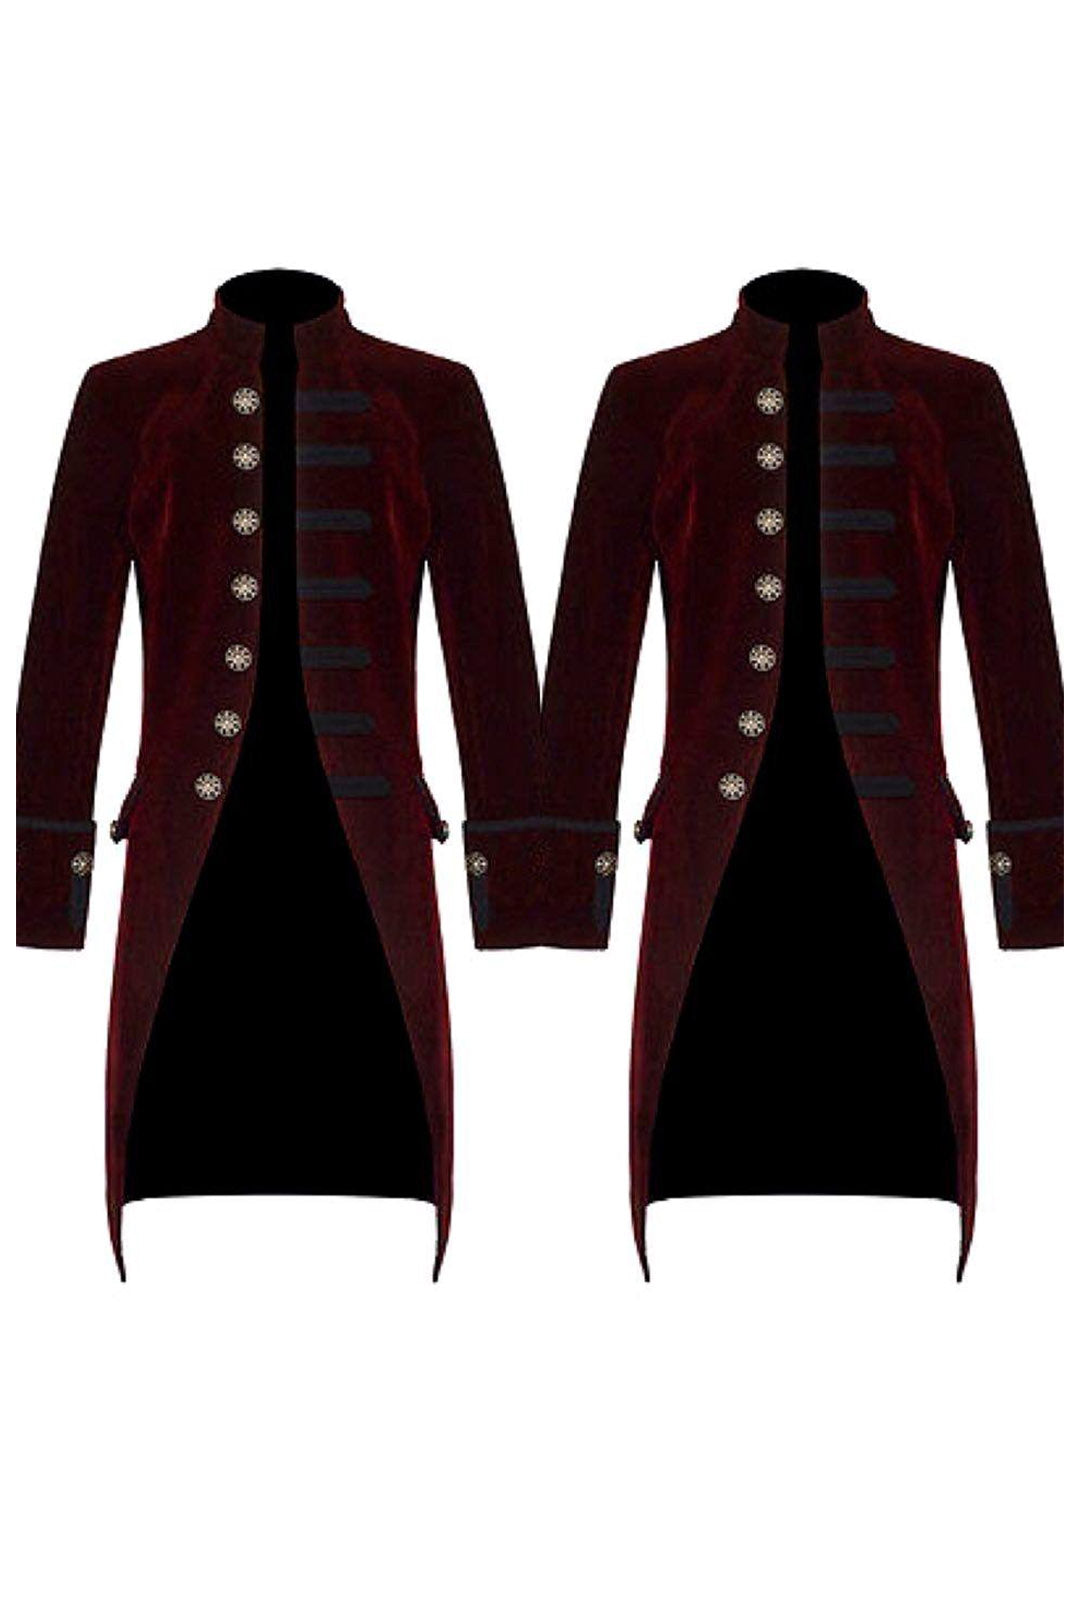 Men's Red Velvet Steampunk Jacket